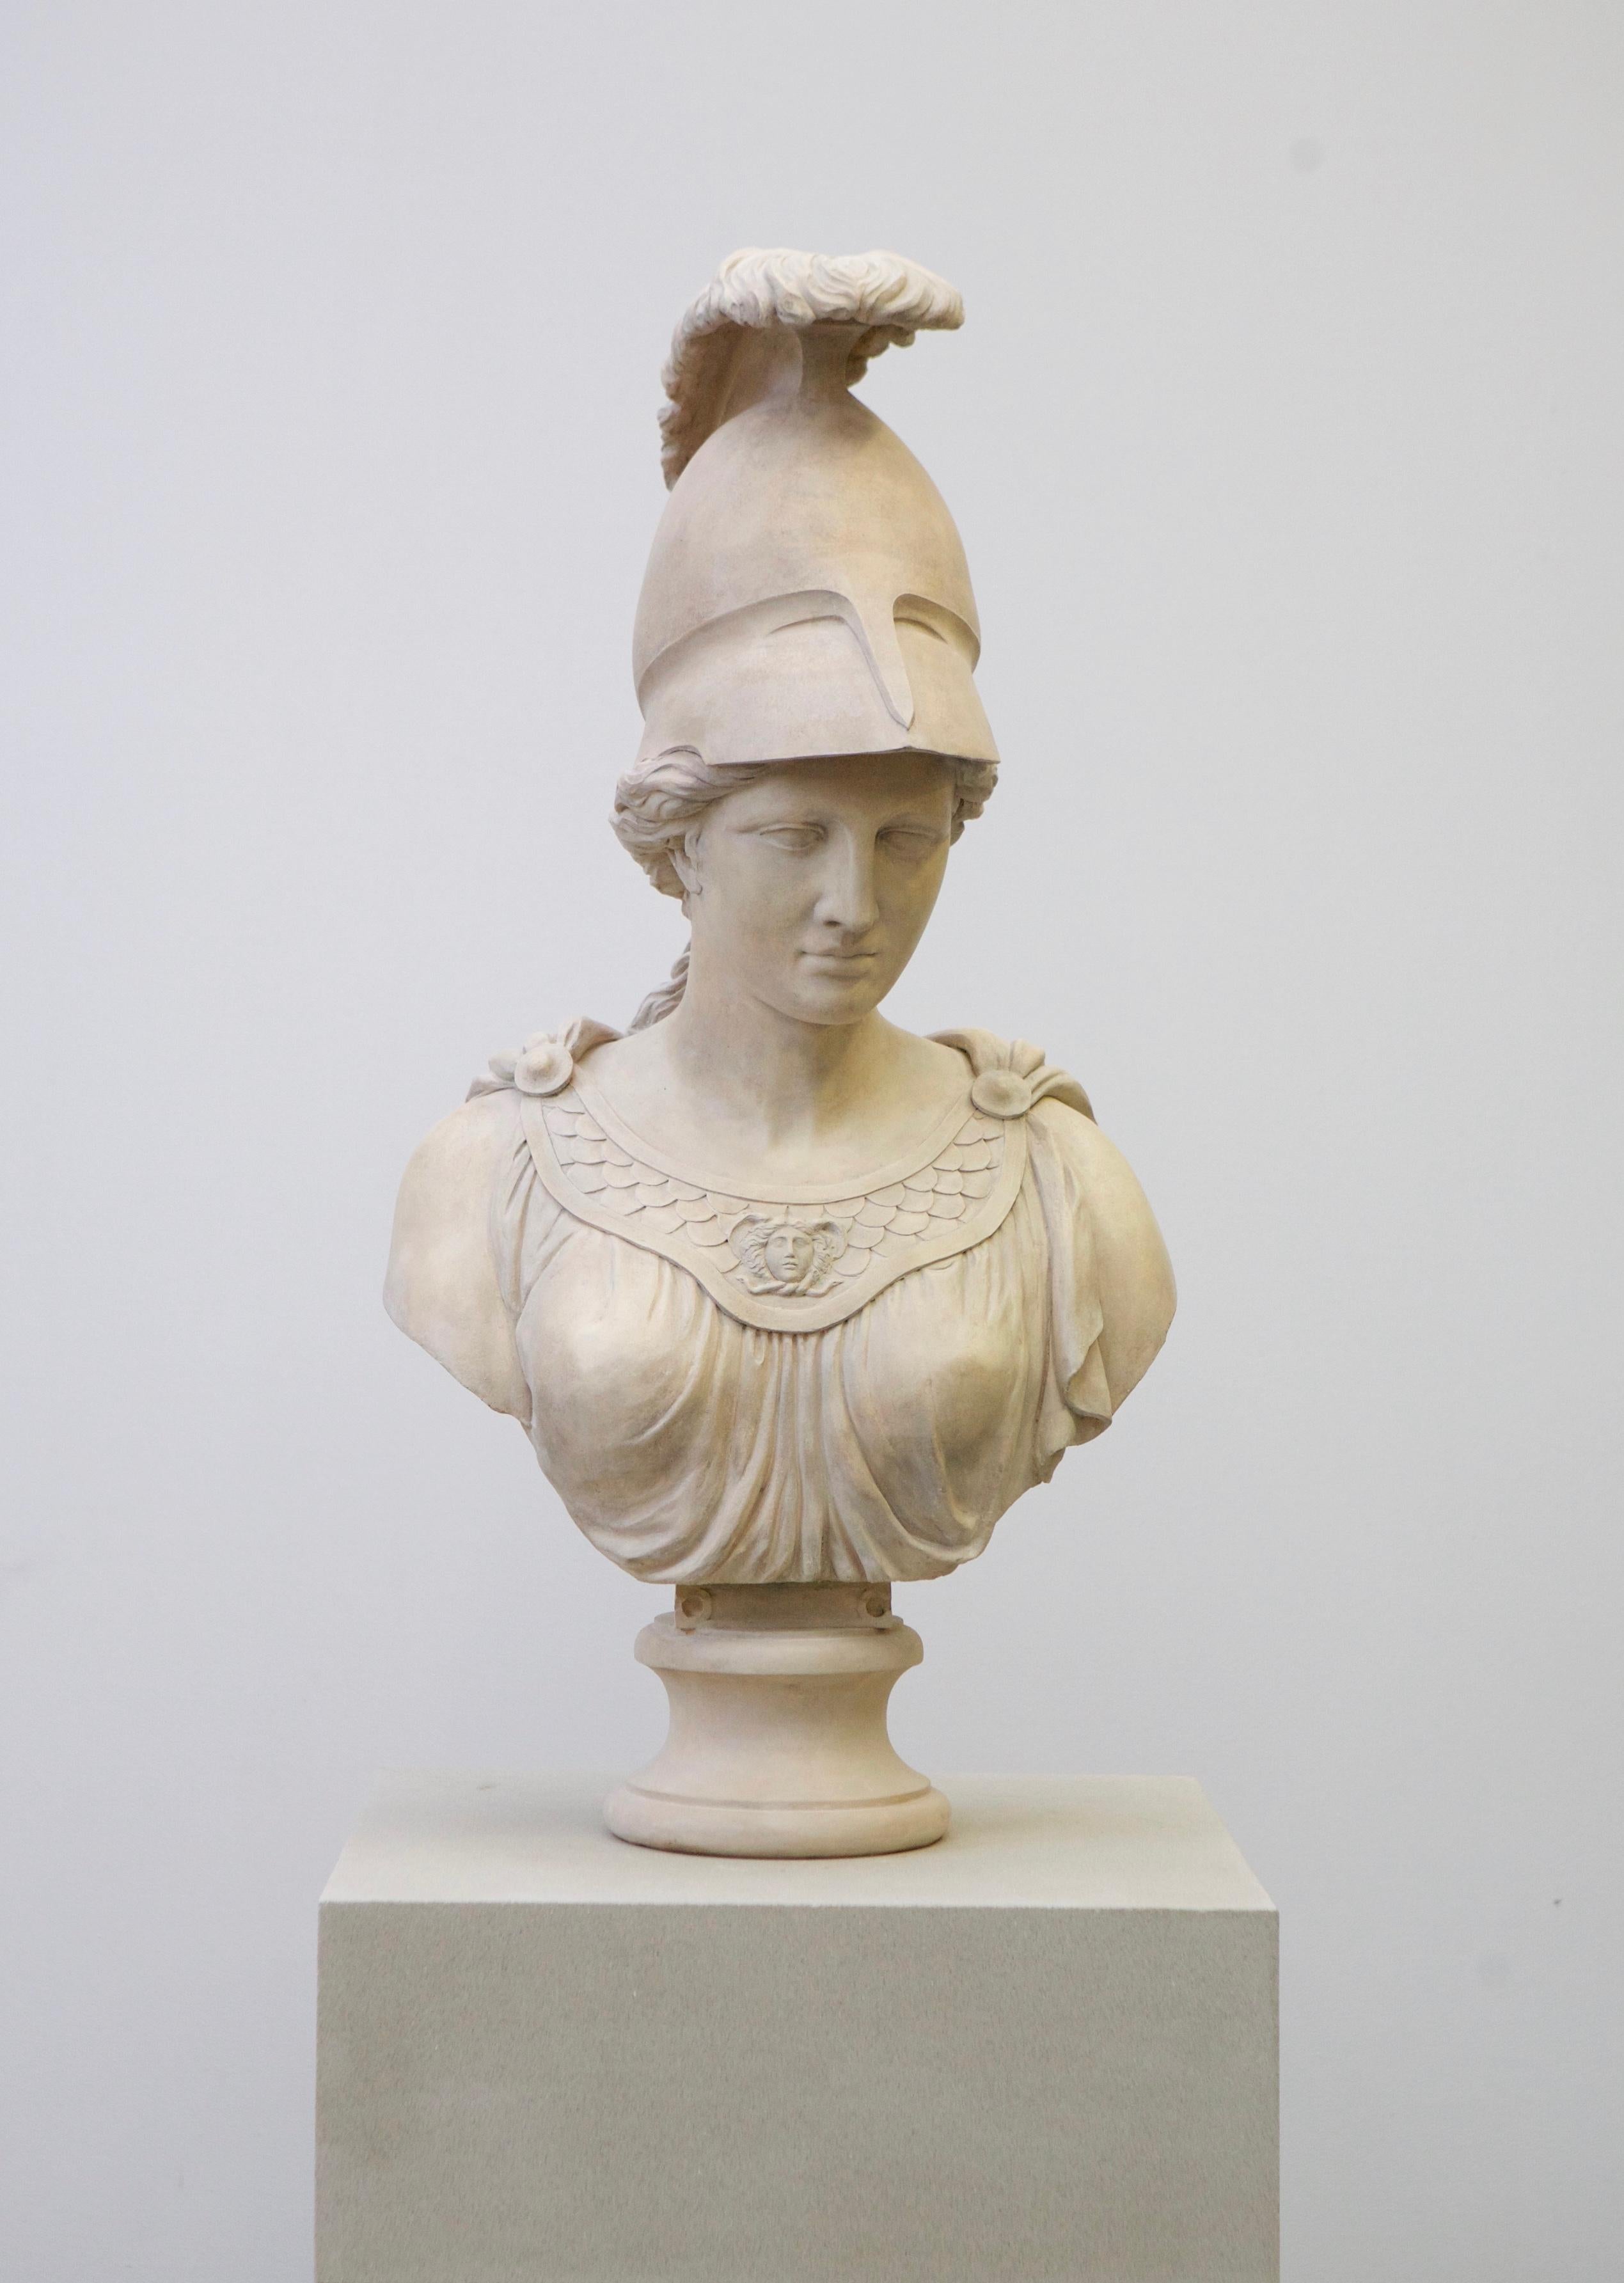 Minerva, la déesse romaine associée à la sagesse, à la justice, à la loi, à la victoire et à divers autres domaines, occupe une place prépondérante dans la mythologie romaine, apparaissant dans de nombreux mythes bien connus. Cette sculpture